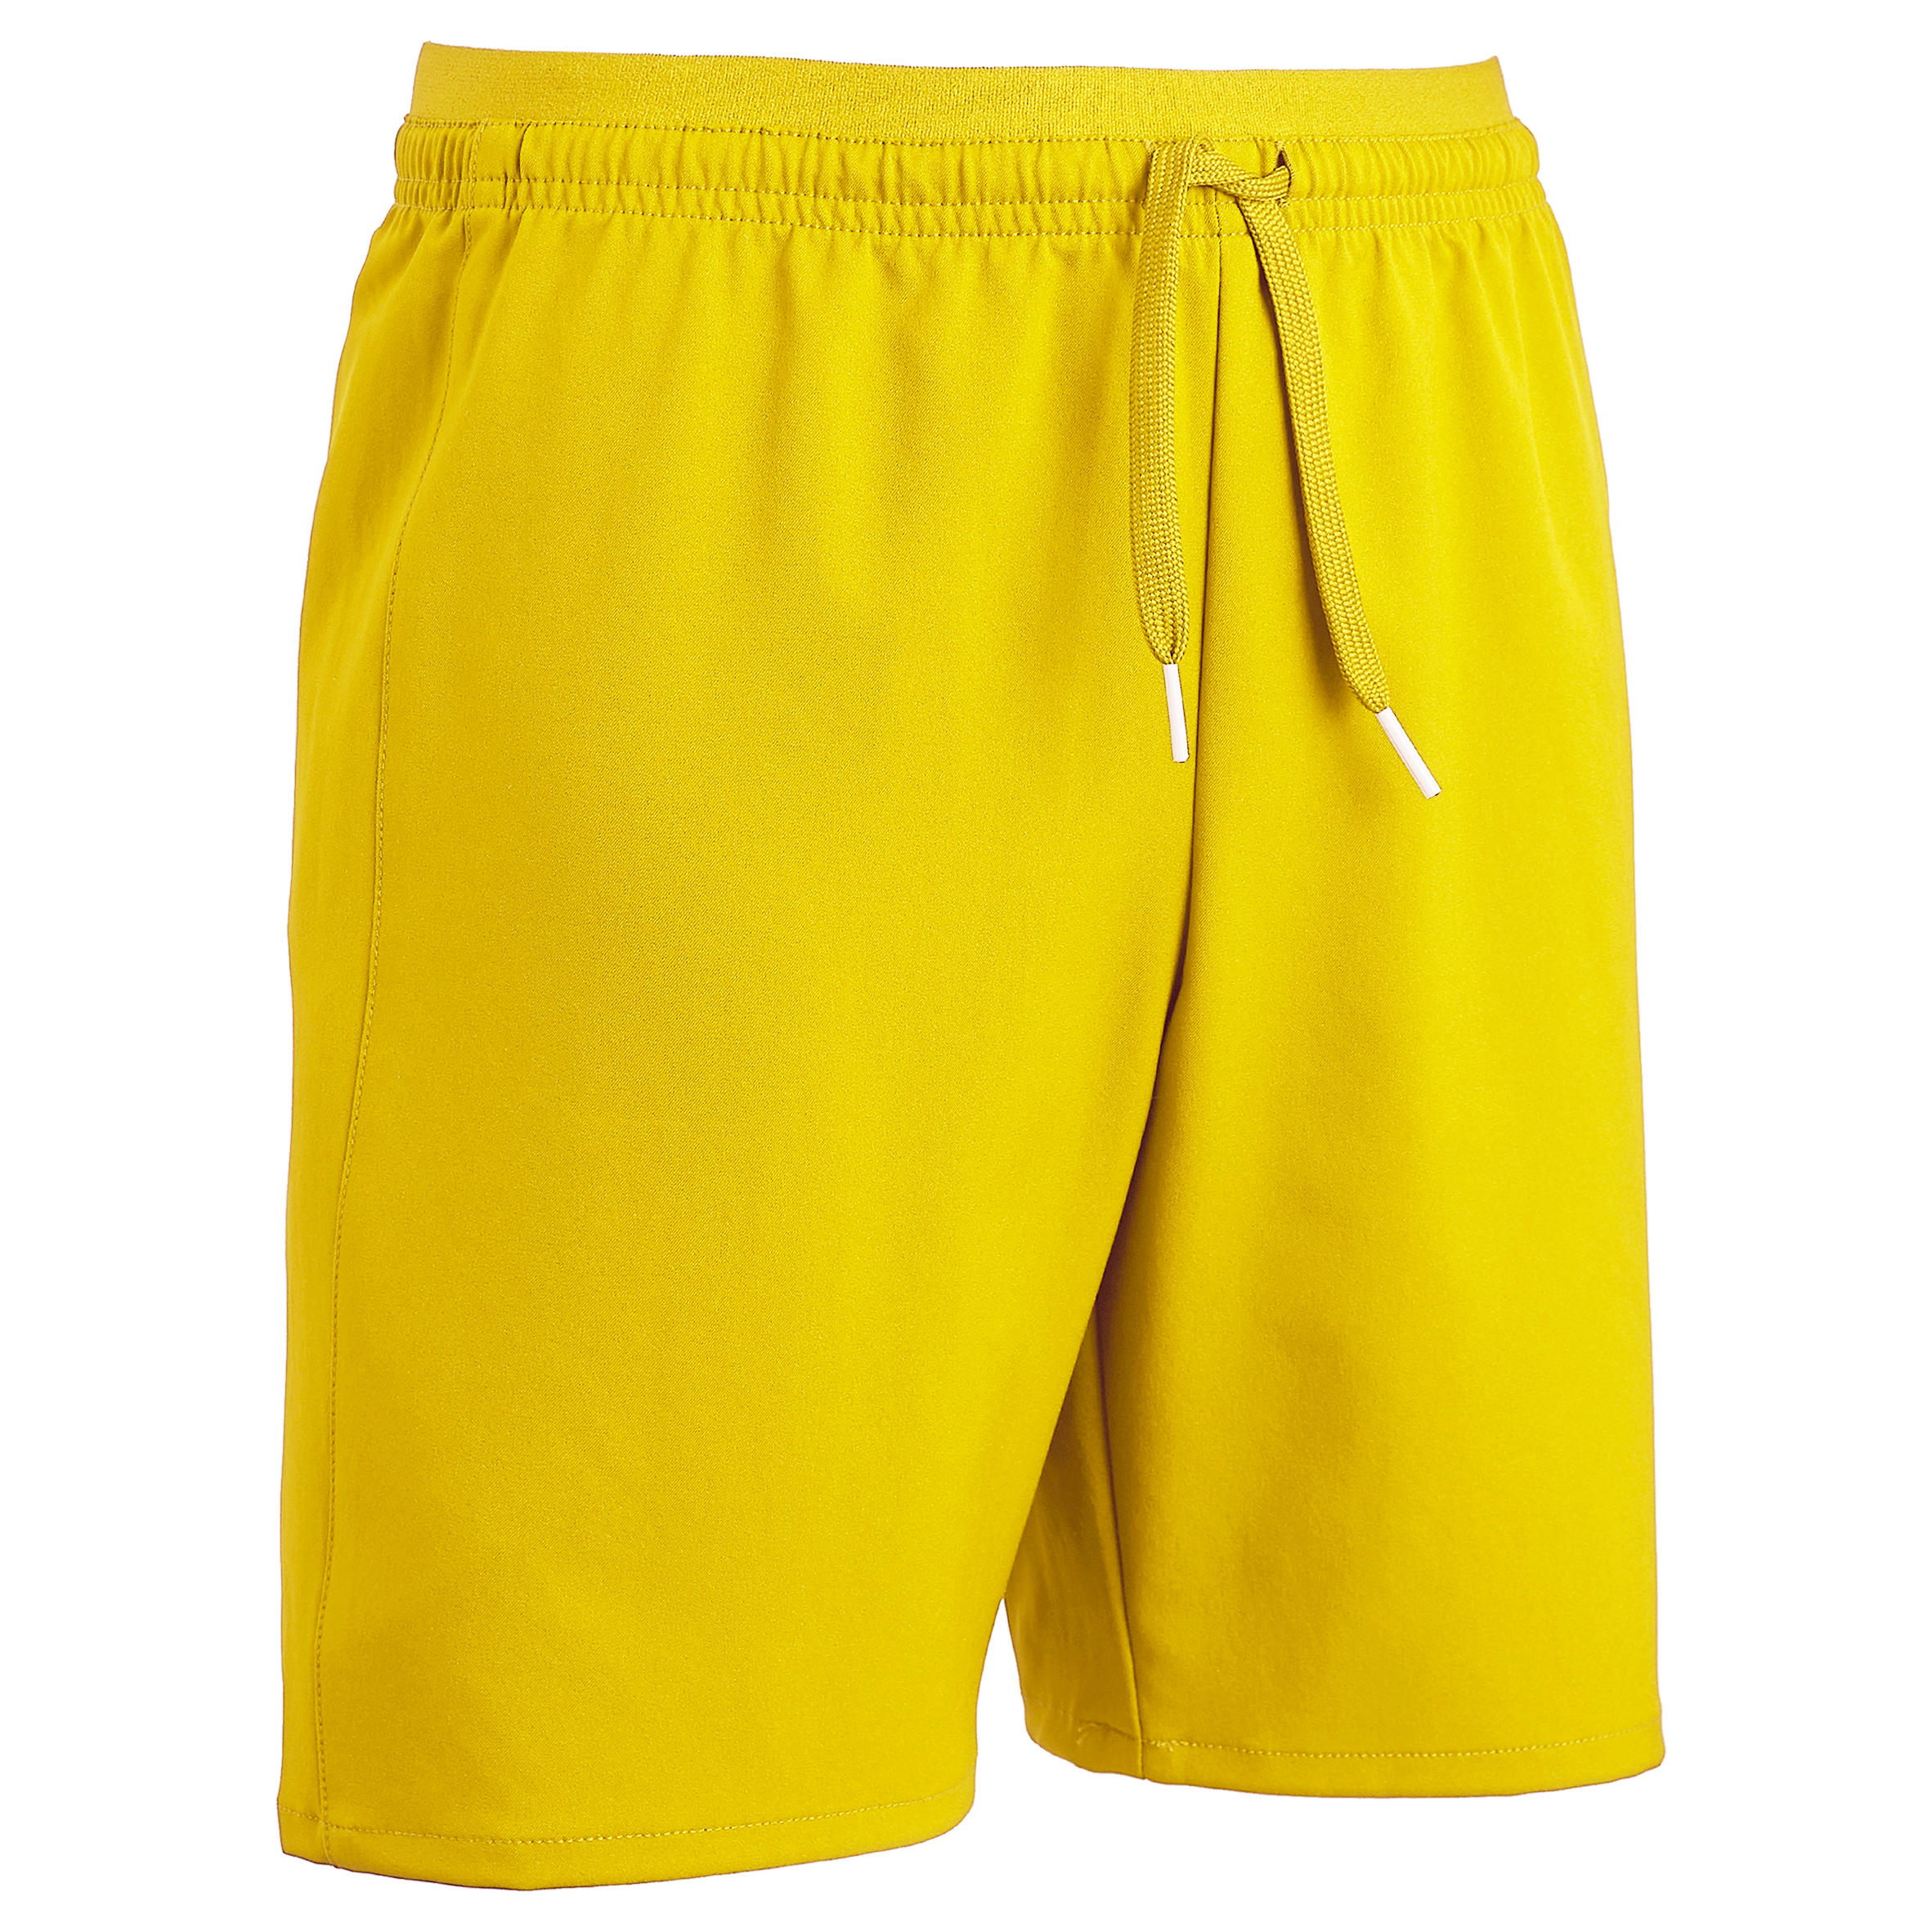 Decathlon | Pantaloncini calcio bambino F500 gialli |  Kipsta